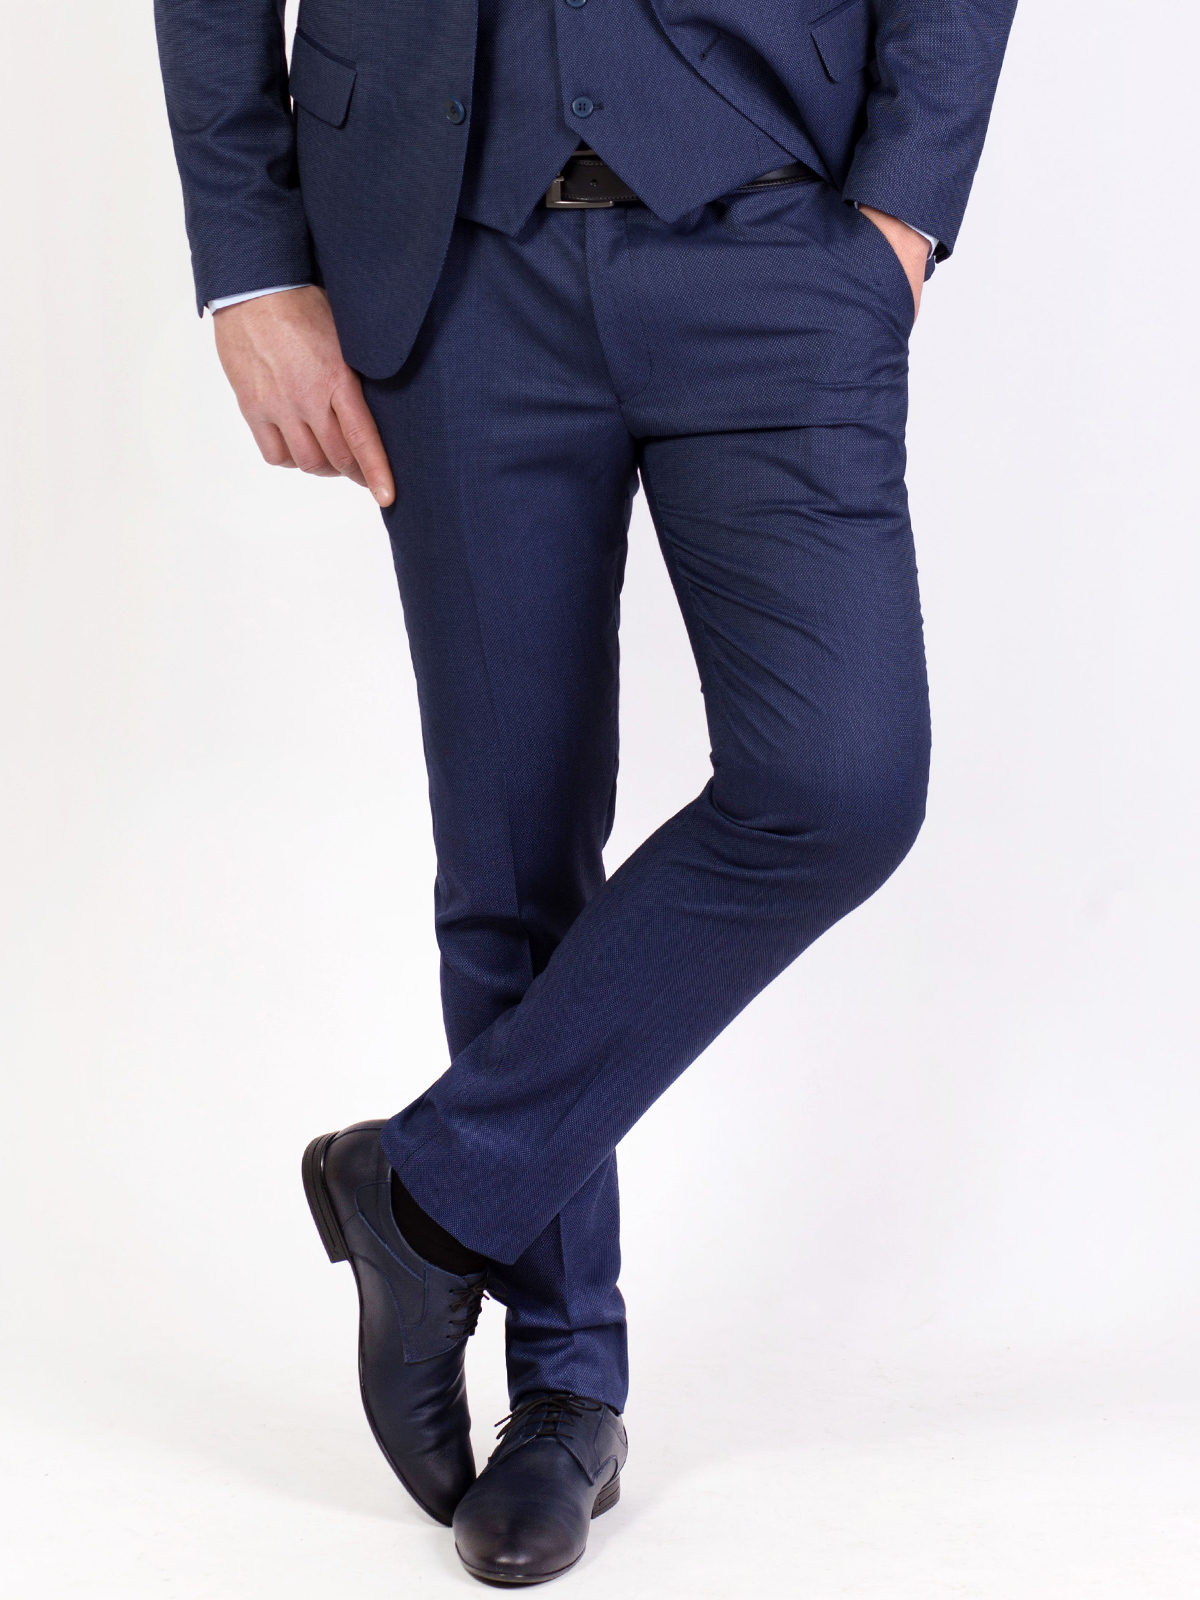 Παντελόνι σε μπλε χρώμα με ανάγλυφες κο - 63306 € 38.81 img2